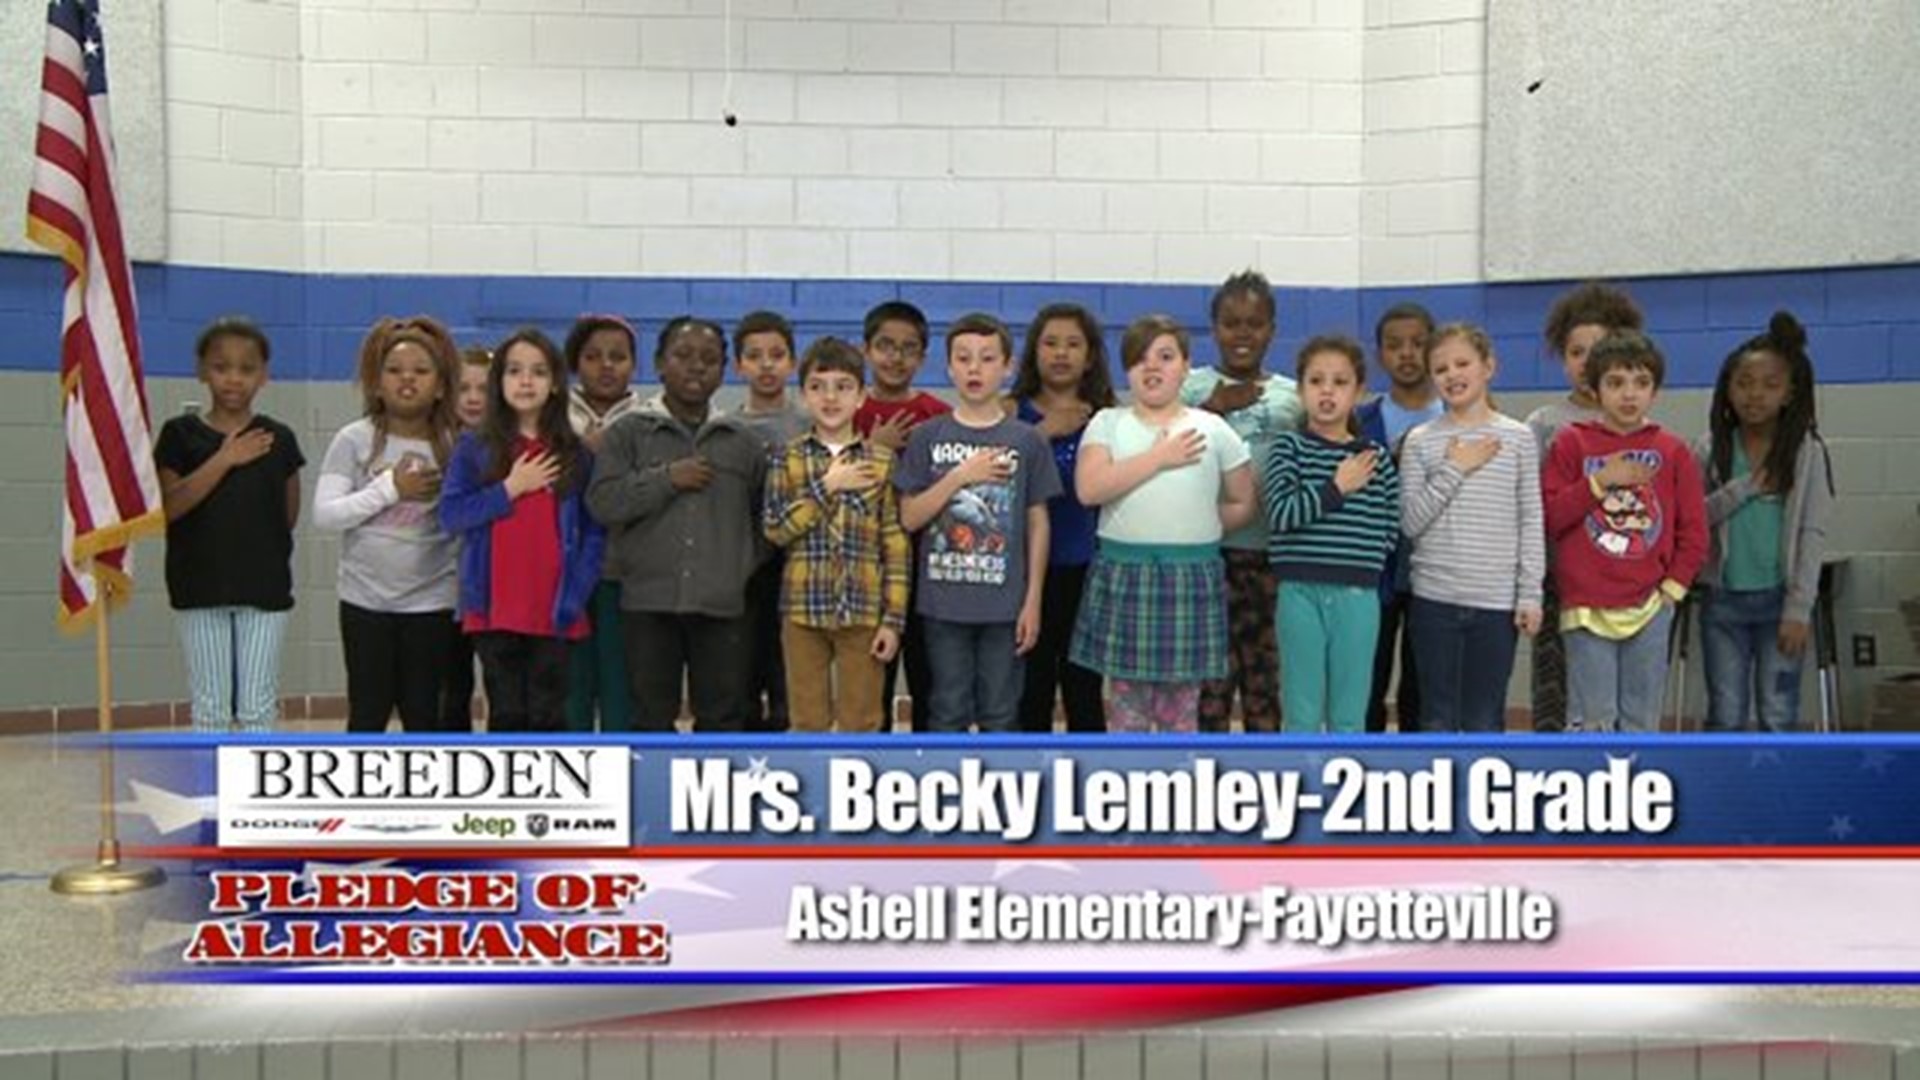 Asbell Elementary, Fayetteville - Mrs. Becky Lemley - 2nd Grade